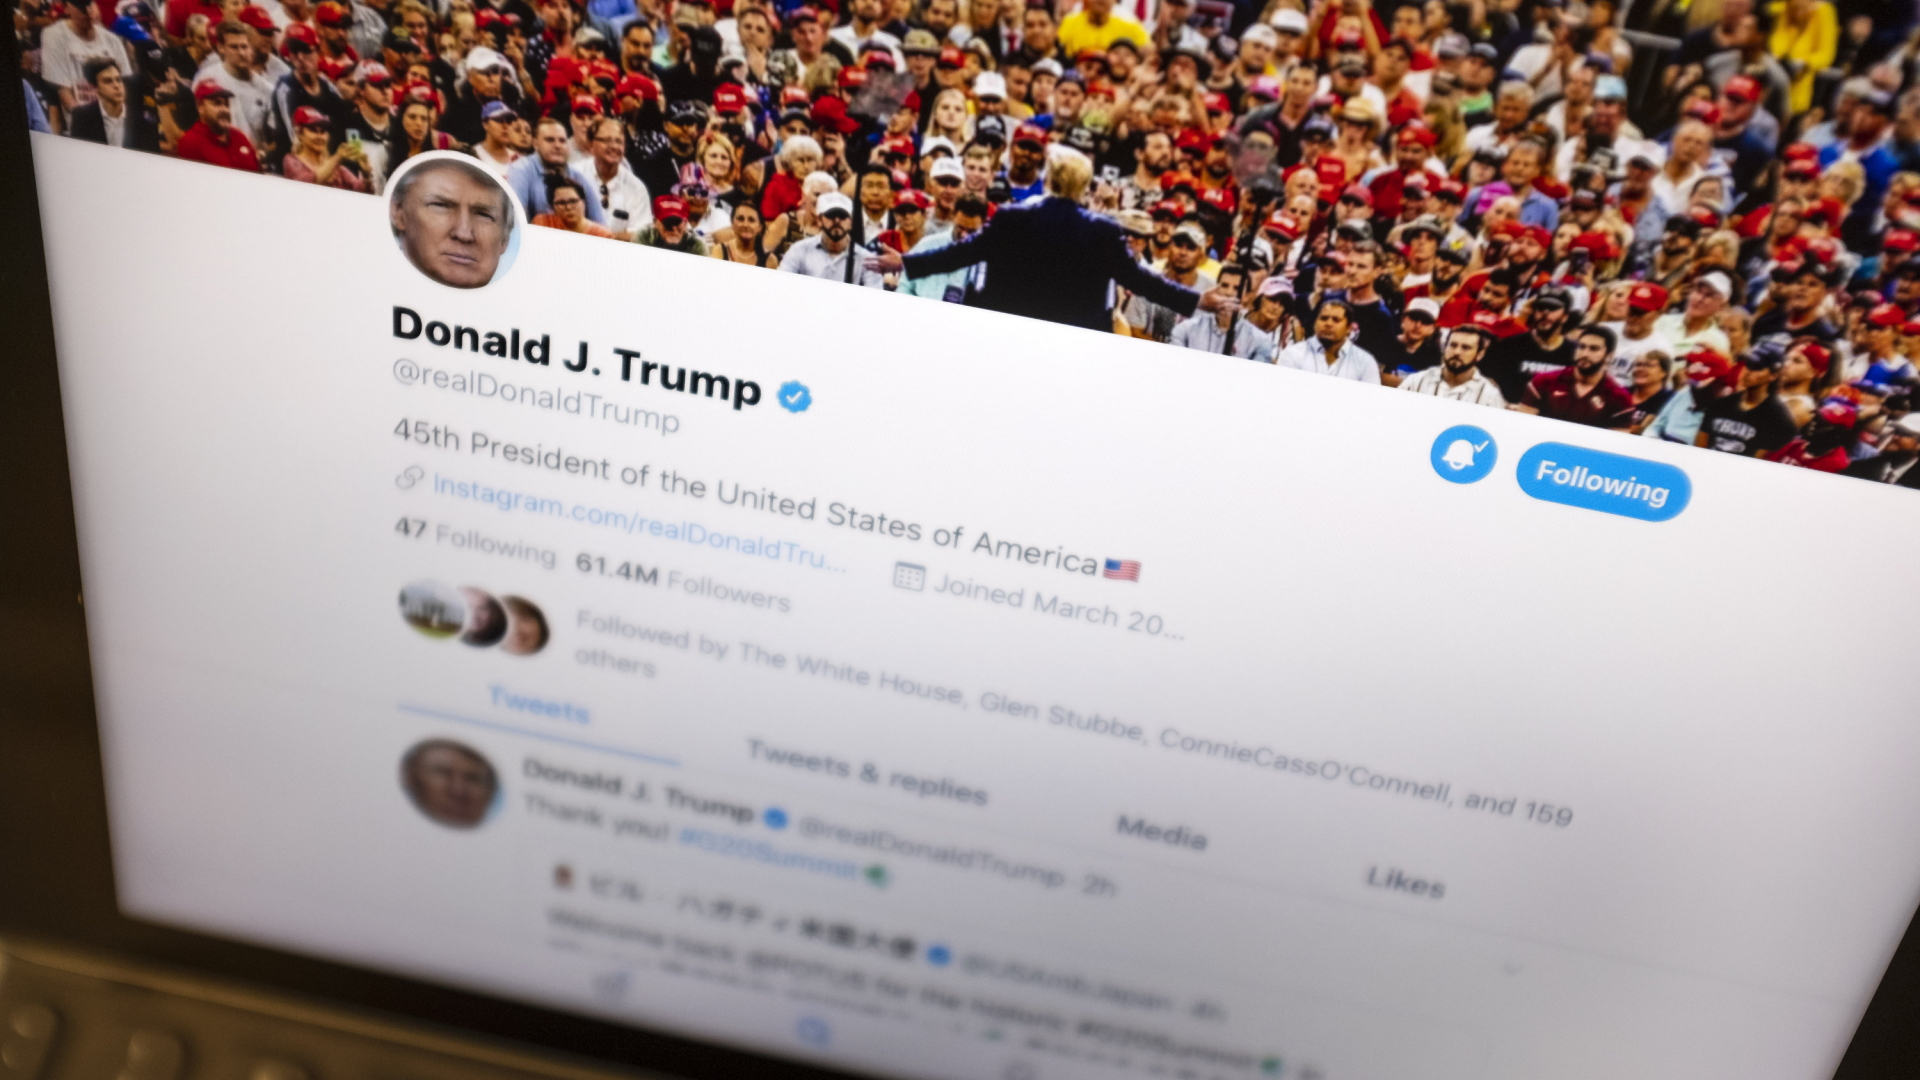 Nach Befragung von Nutzern: Twitter entsperrt Account von Trump